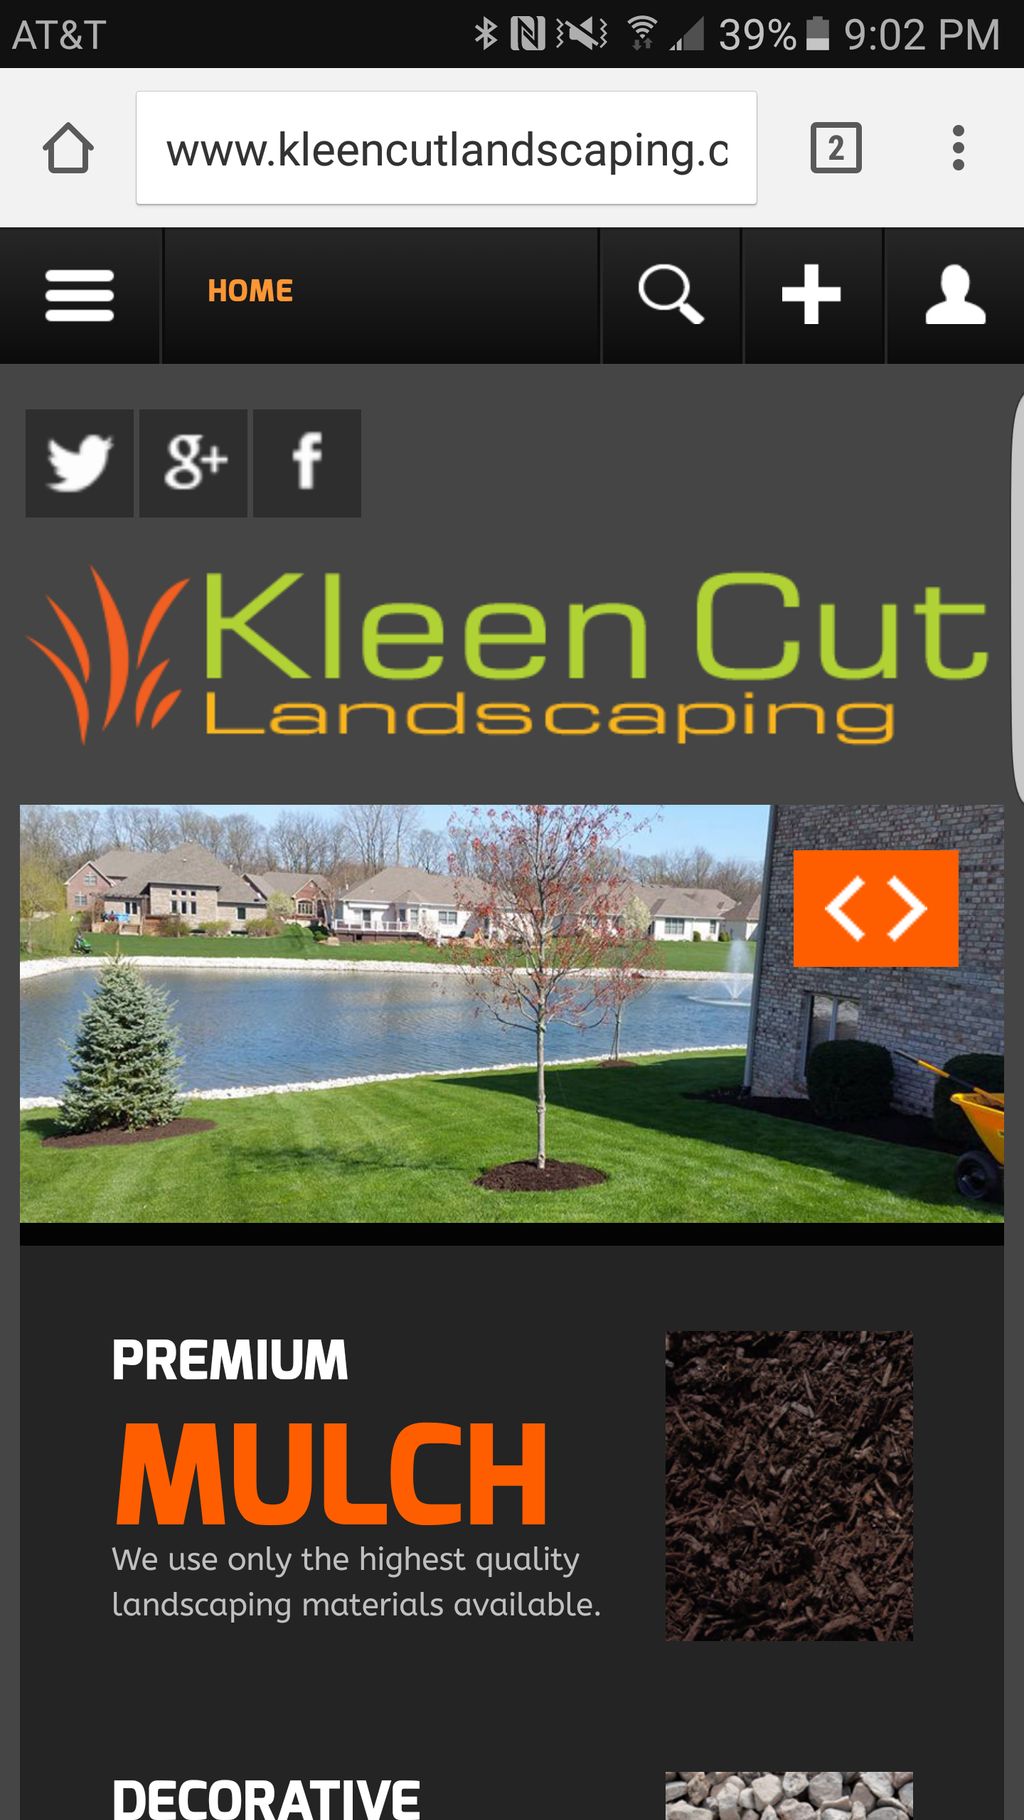 Kleen Cut Landscaping